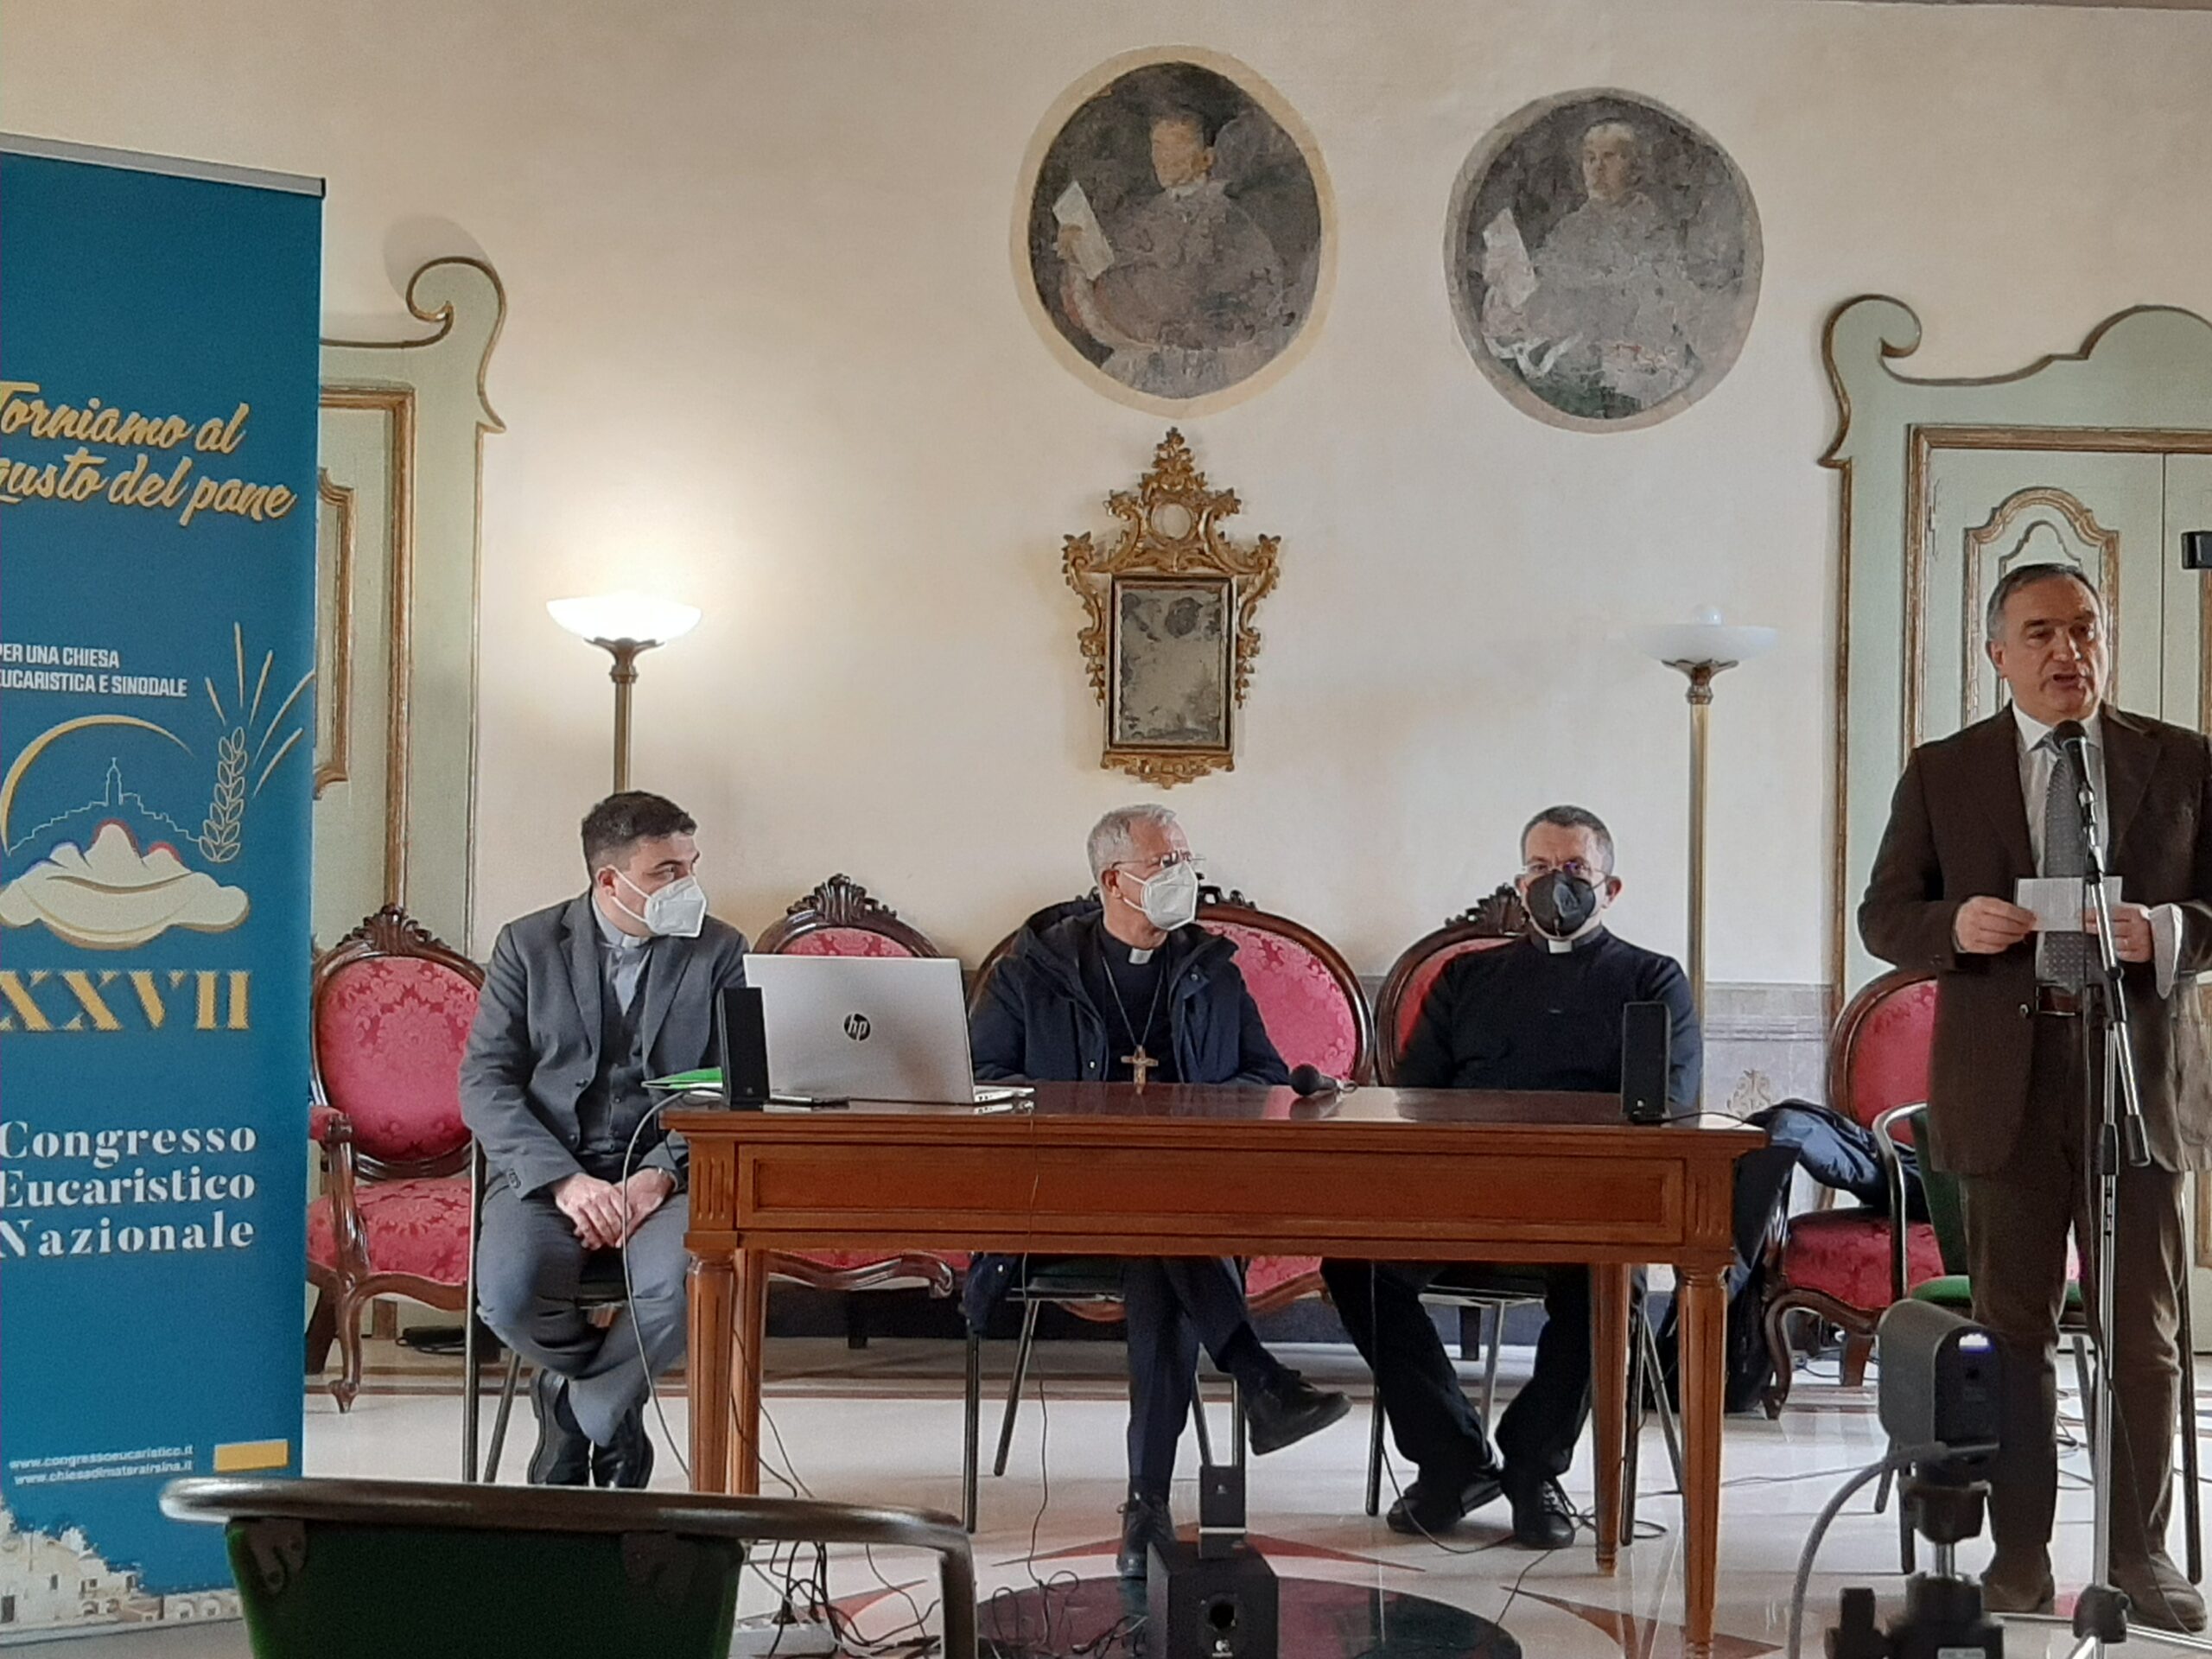 XXVII Congresso Eucaristico Nazionale, conferenza stampa il 30 maggio a Matera